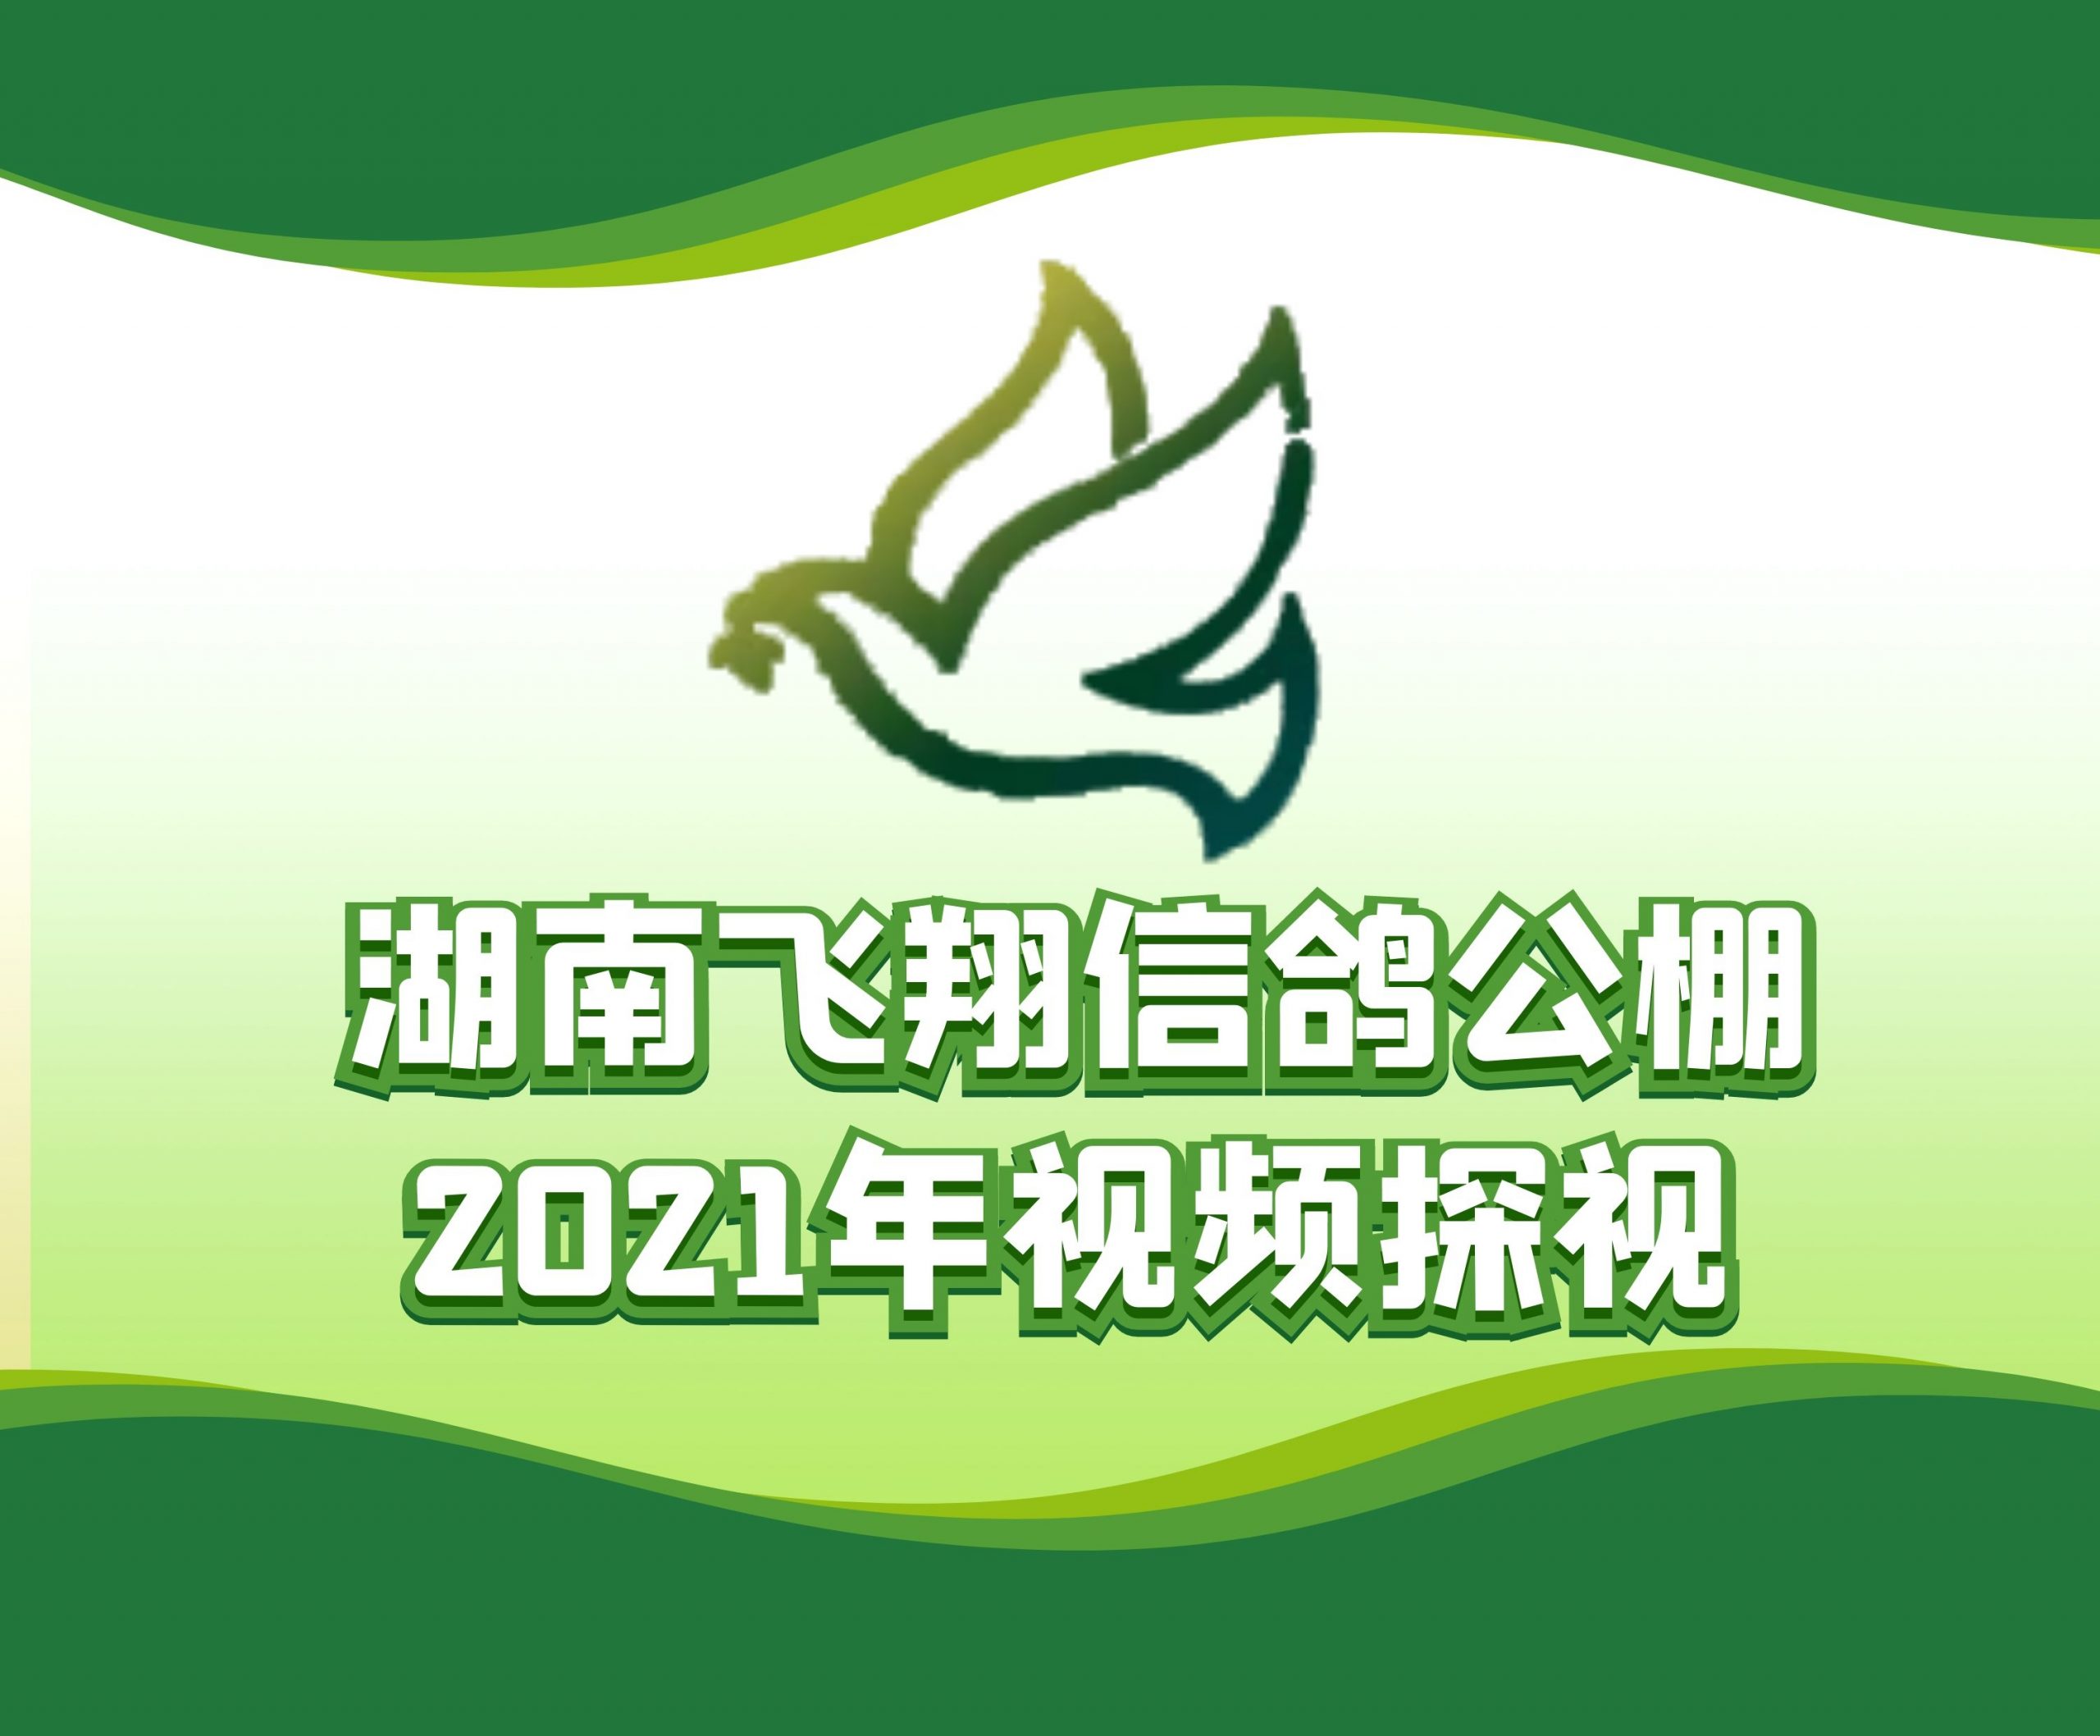 国强鸽业-胡国强-2021-18-0060881